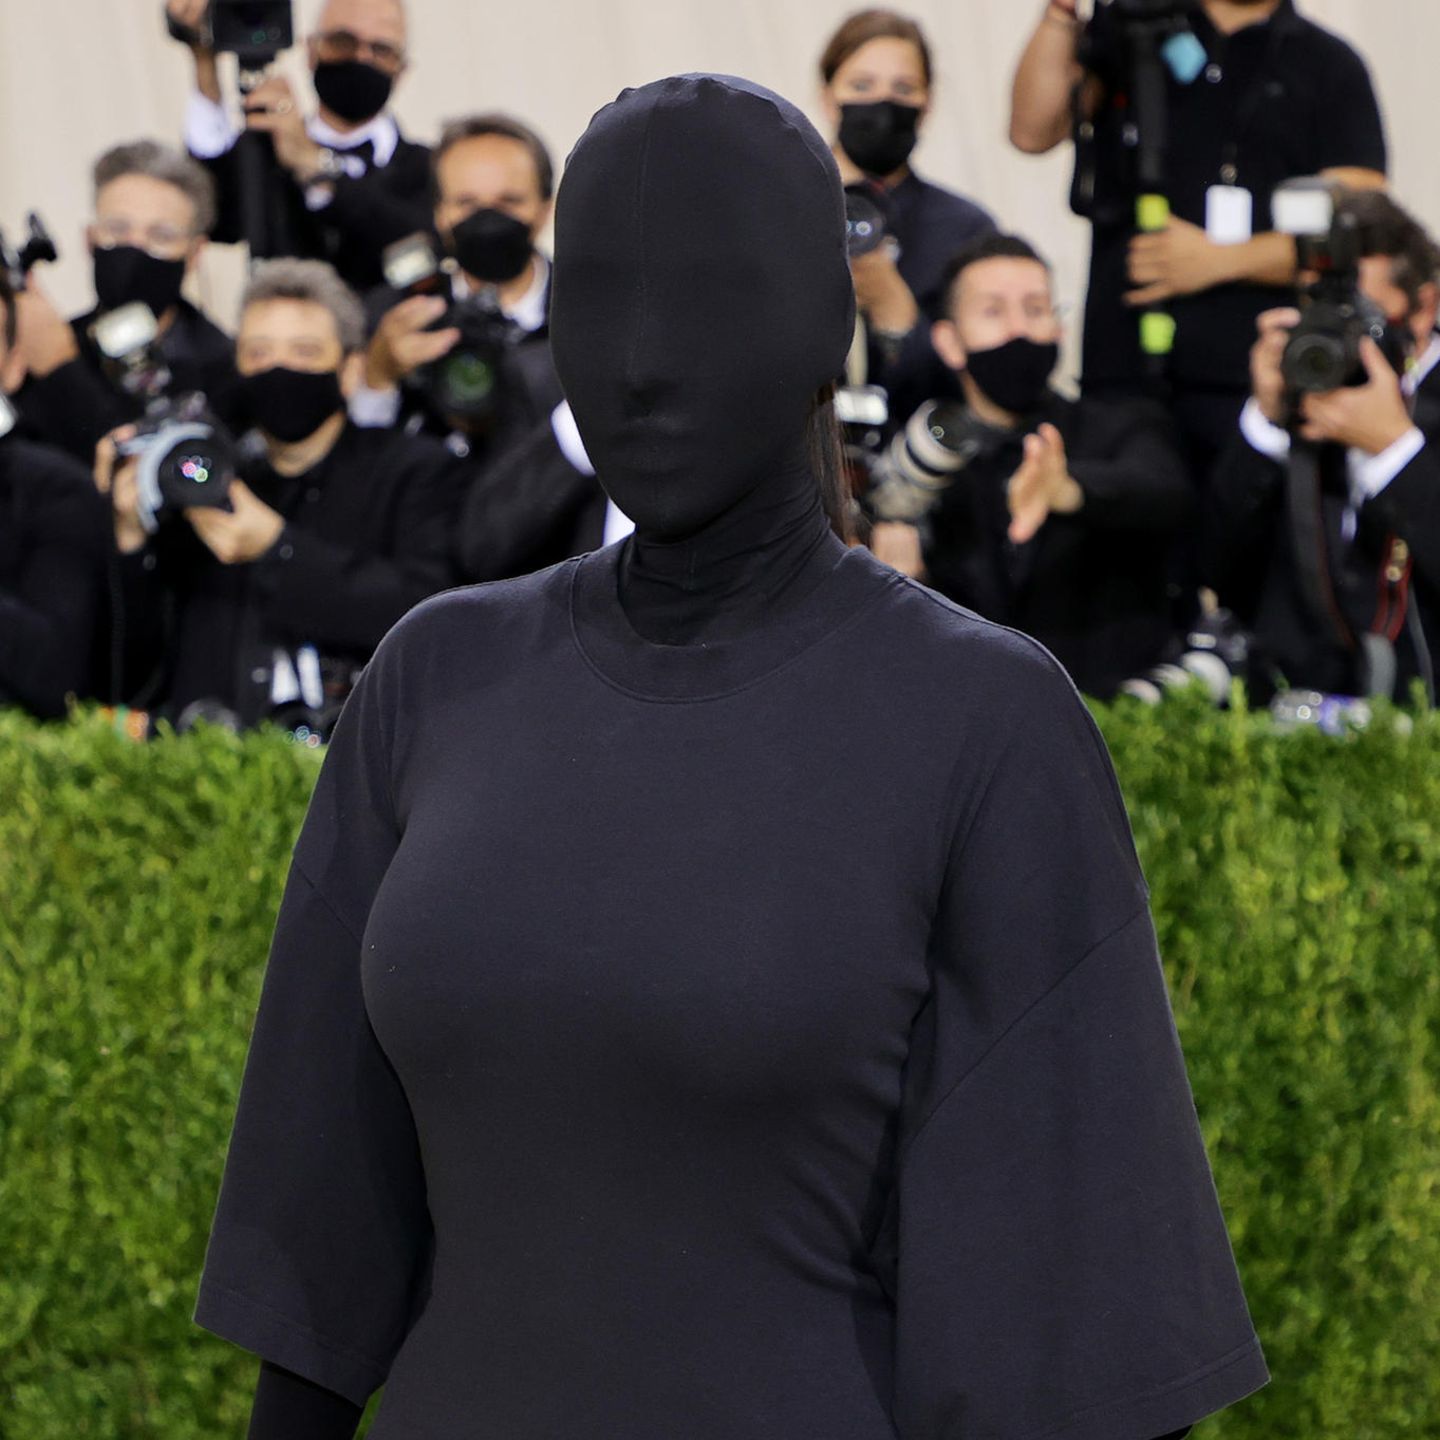 Auch wenn sie eigentlich nicht zu erkennen ist, ist sie mit diesem vollverhüllten Look auf der diesjährigen Met-Gala im September unverkennbar: Kim Kardashian entwickelt sich immer mehr zur exzentrischen Style-Ikone und beschert uns definitiv einen Red-Carpet-Auftritt, der in Erinnerung bleibt. 